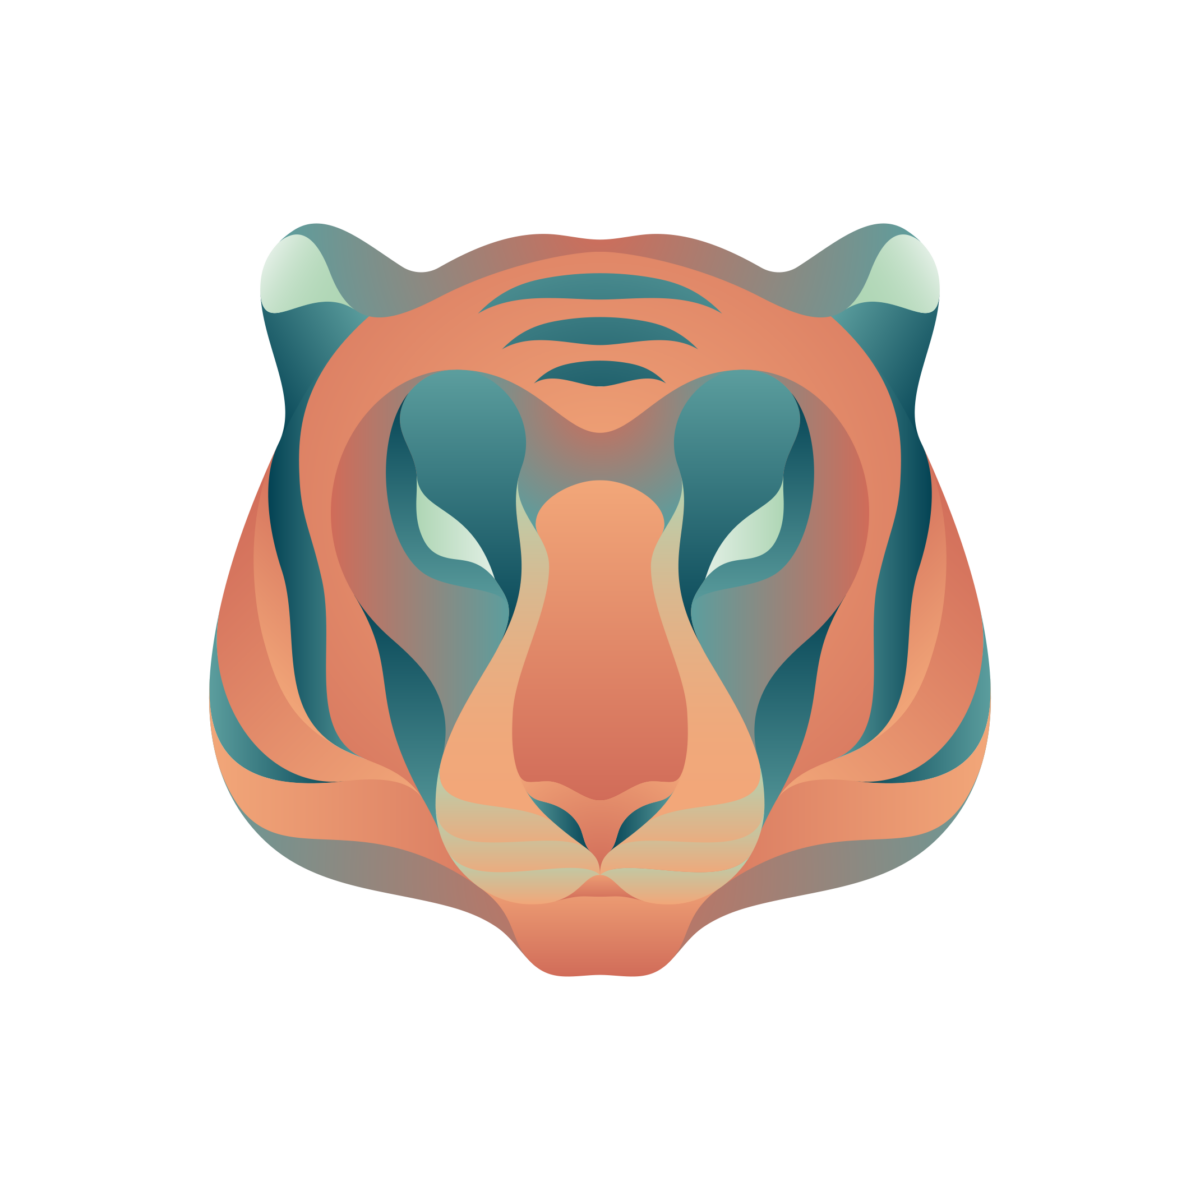 08. Panthera Tigris - DISAPPOINTED WILDLIFE